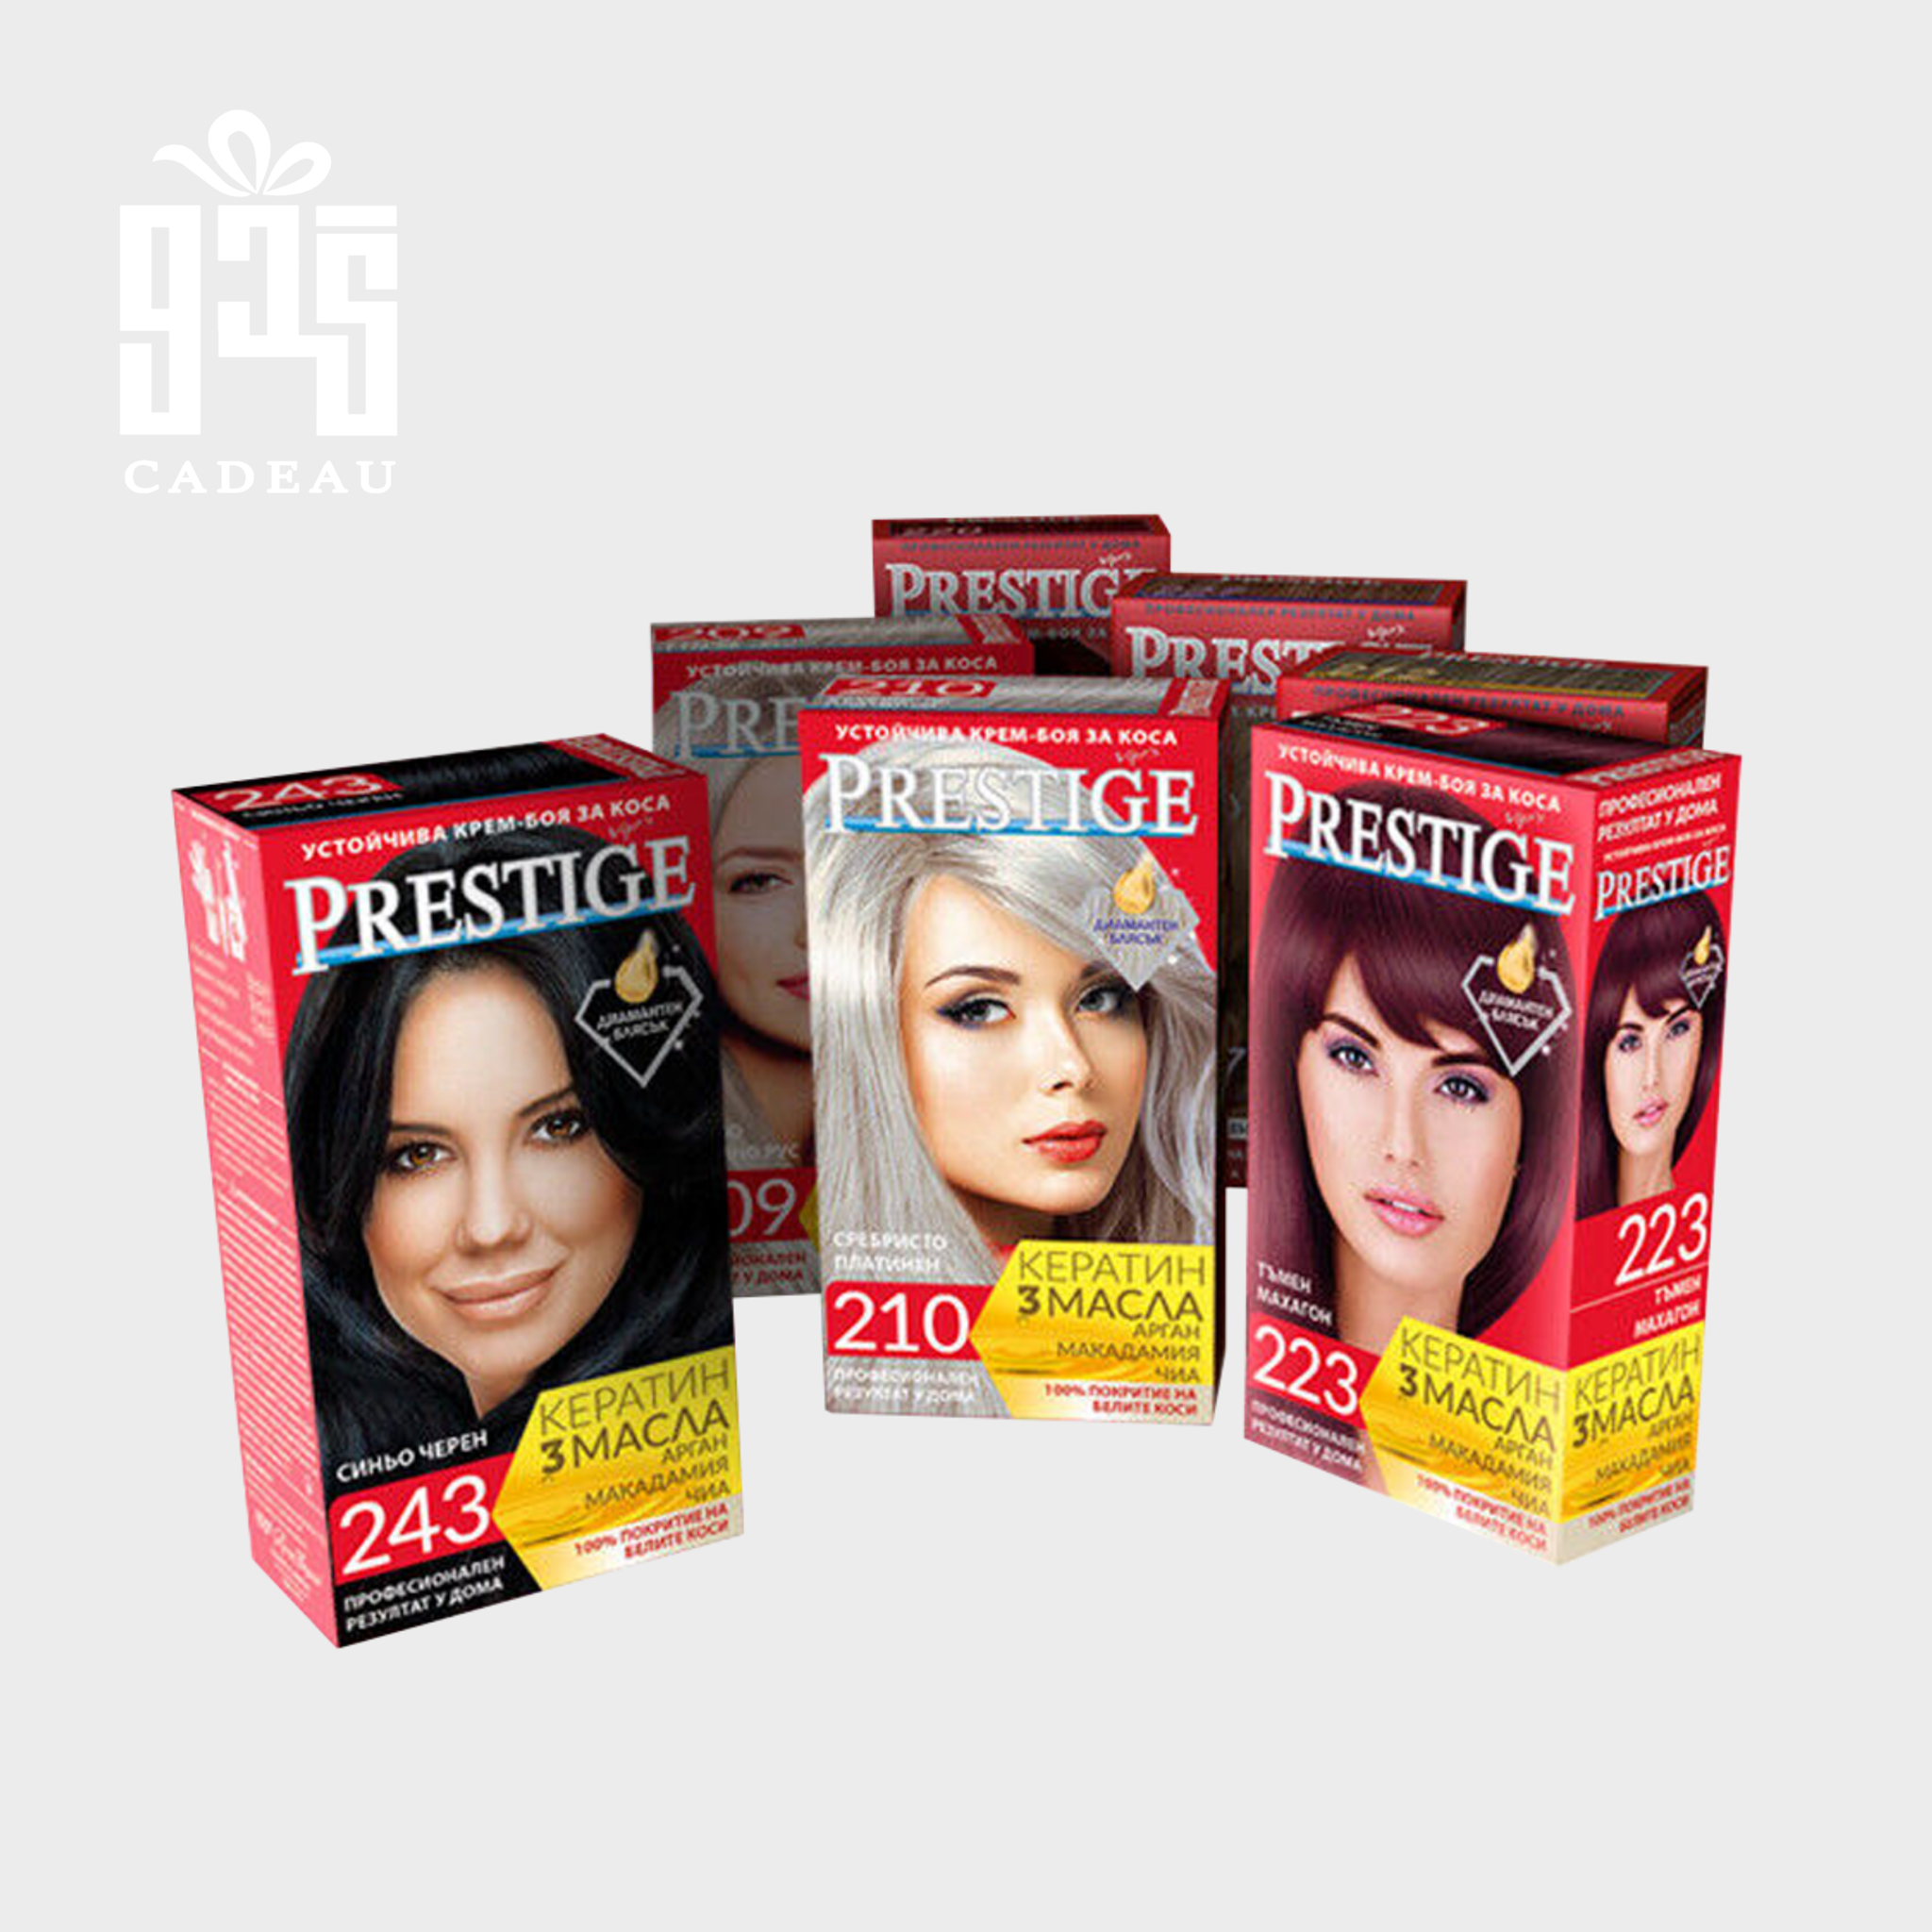 صورة المنتج كريم صبغة الشعر الدائم من  Prestige يحتوي  على 100مل كيراتين